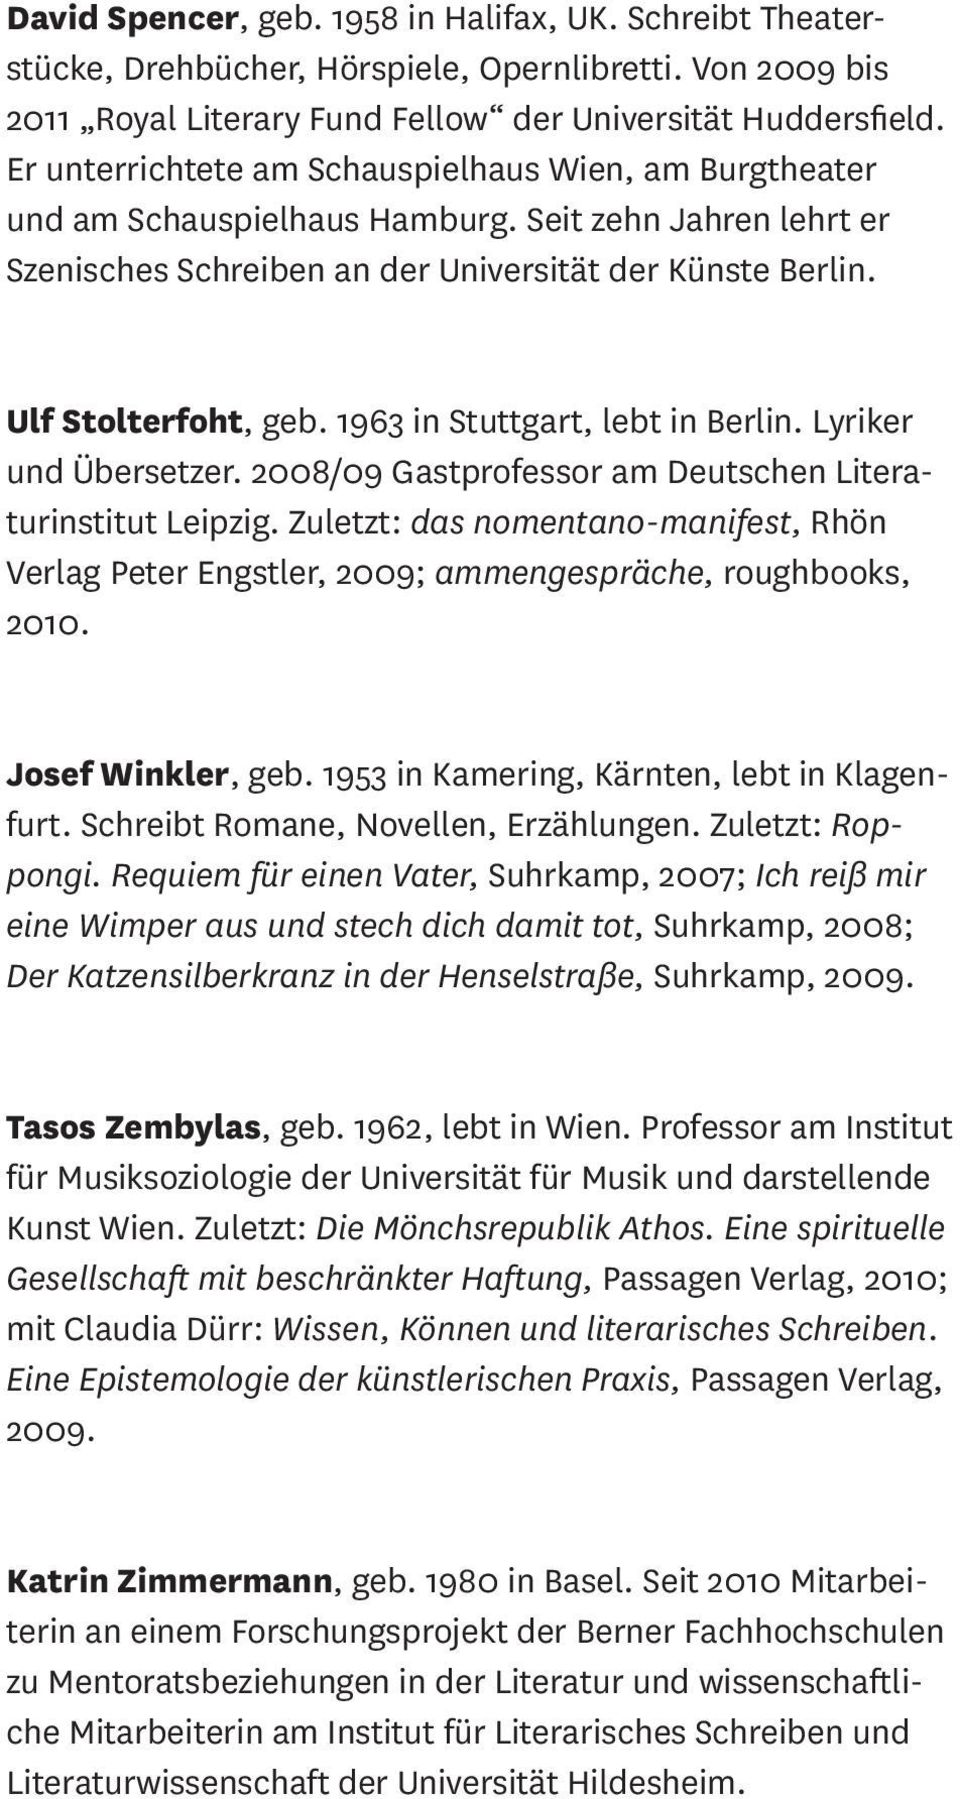 1963 in Stuttgart, lebt in Berlin. Lyriker und Übersetzer. 2008/09 Gastprofessor am Deutschen Literaturinstitut Leipzig.